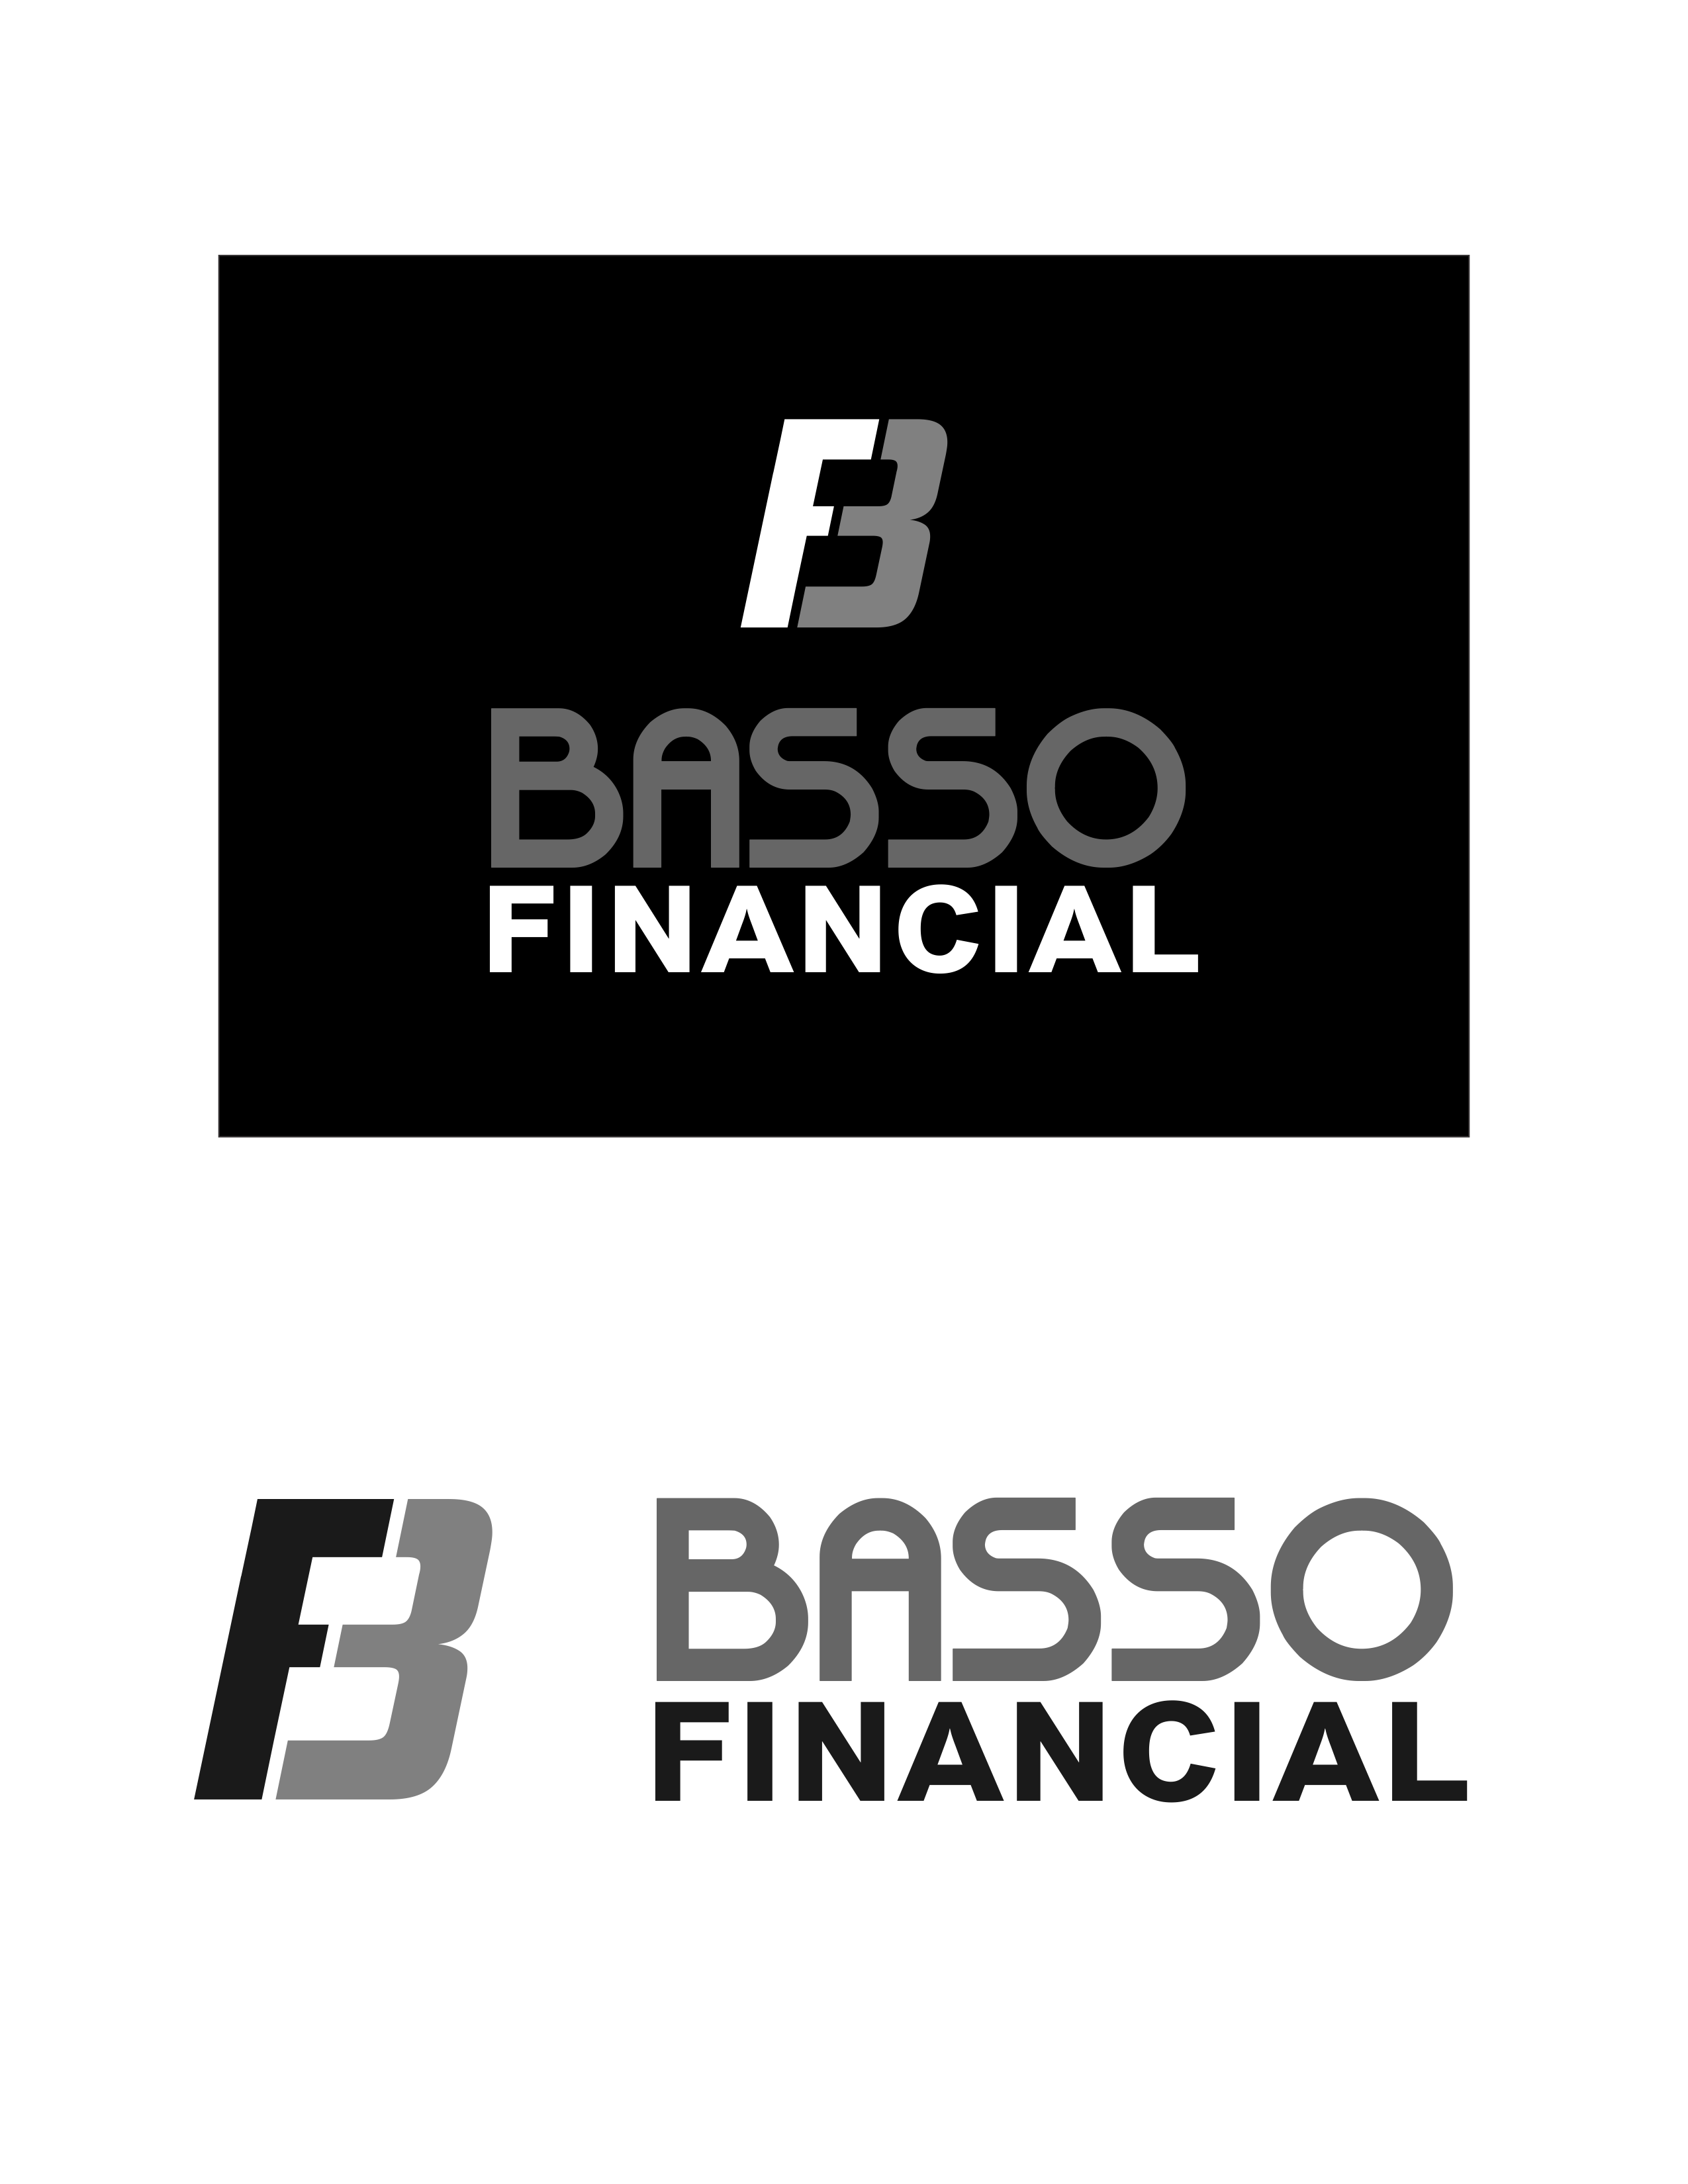 bf logo1.png